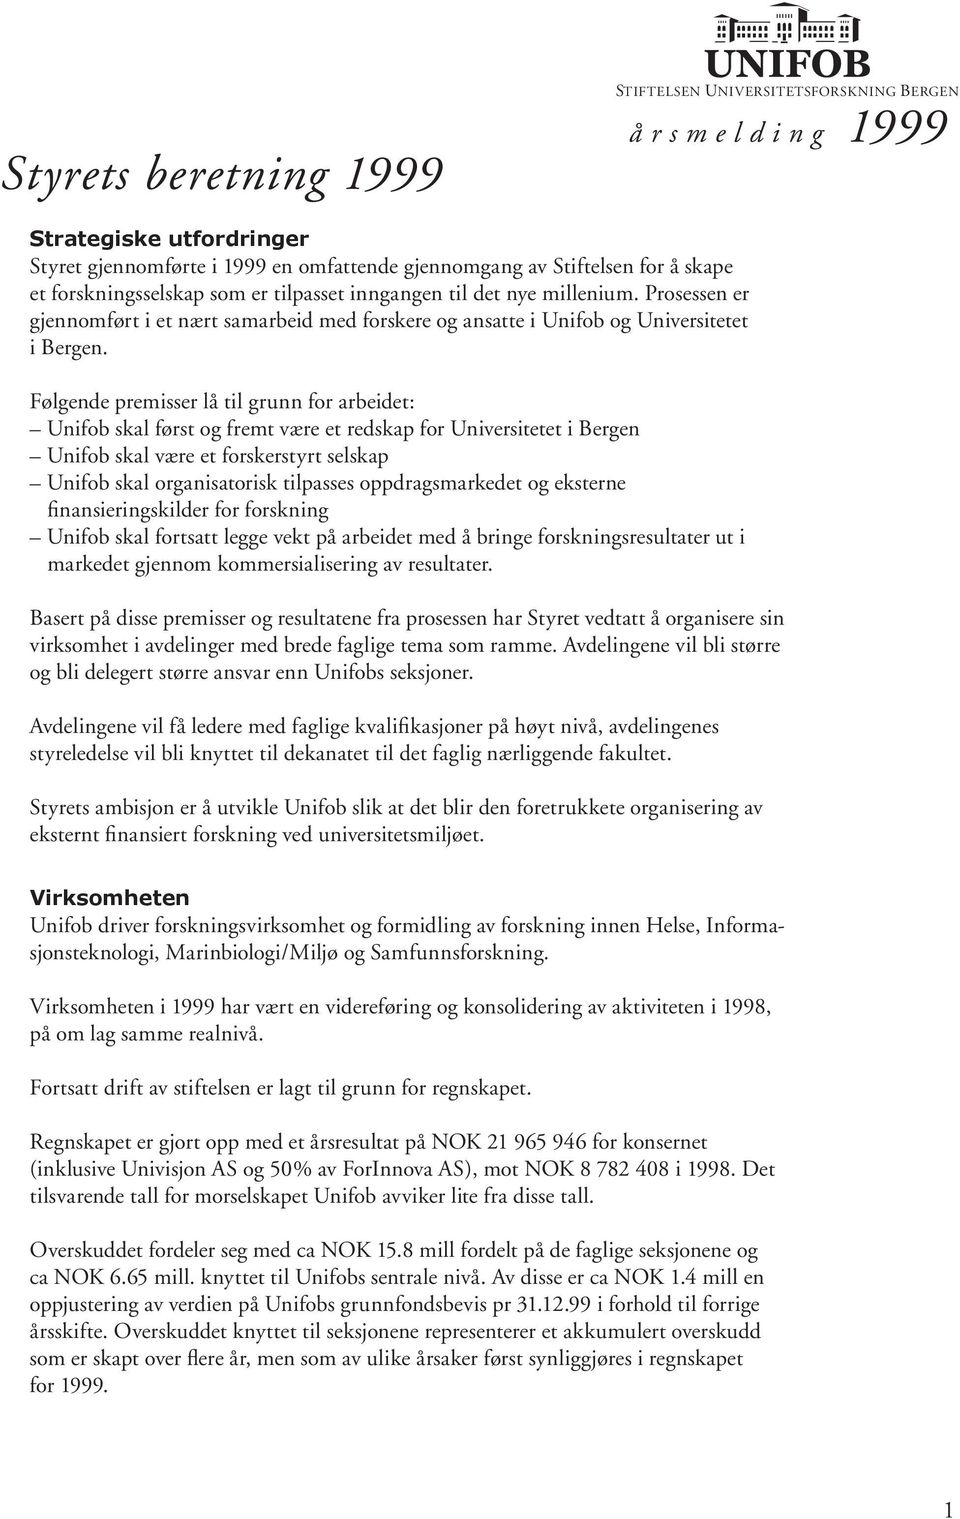 Følgende premisser lå til grunn for arbeidet: Unifob skal først og fremt være et redskap for Universitetet i Bergen Unifob skal være et forskerstyrt selskap Unifob skal organisatorisk tilpasses